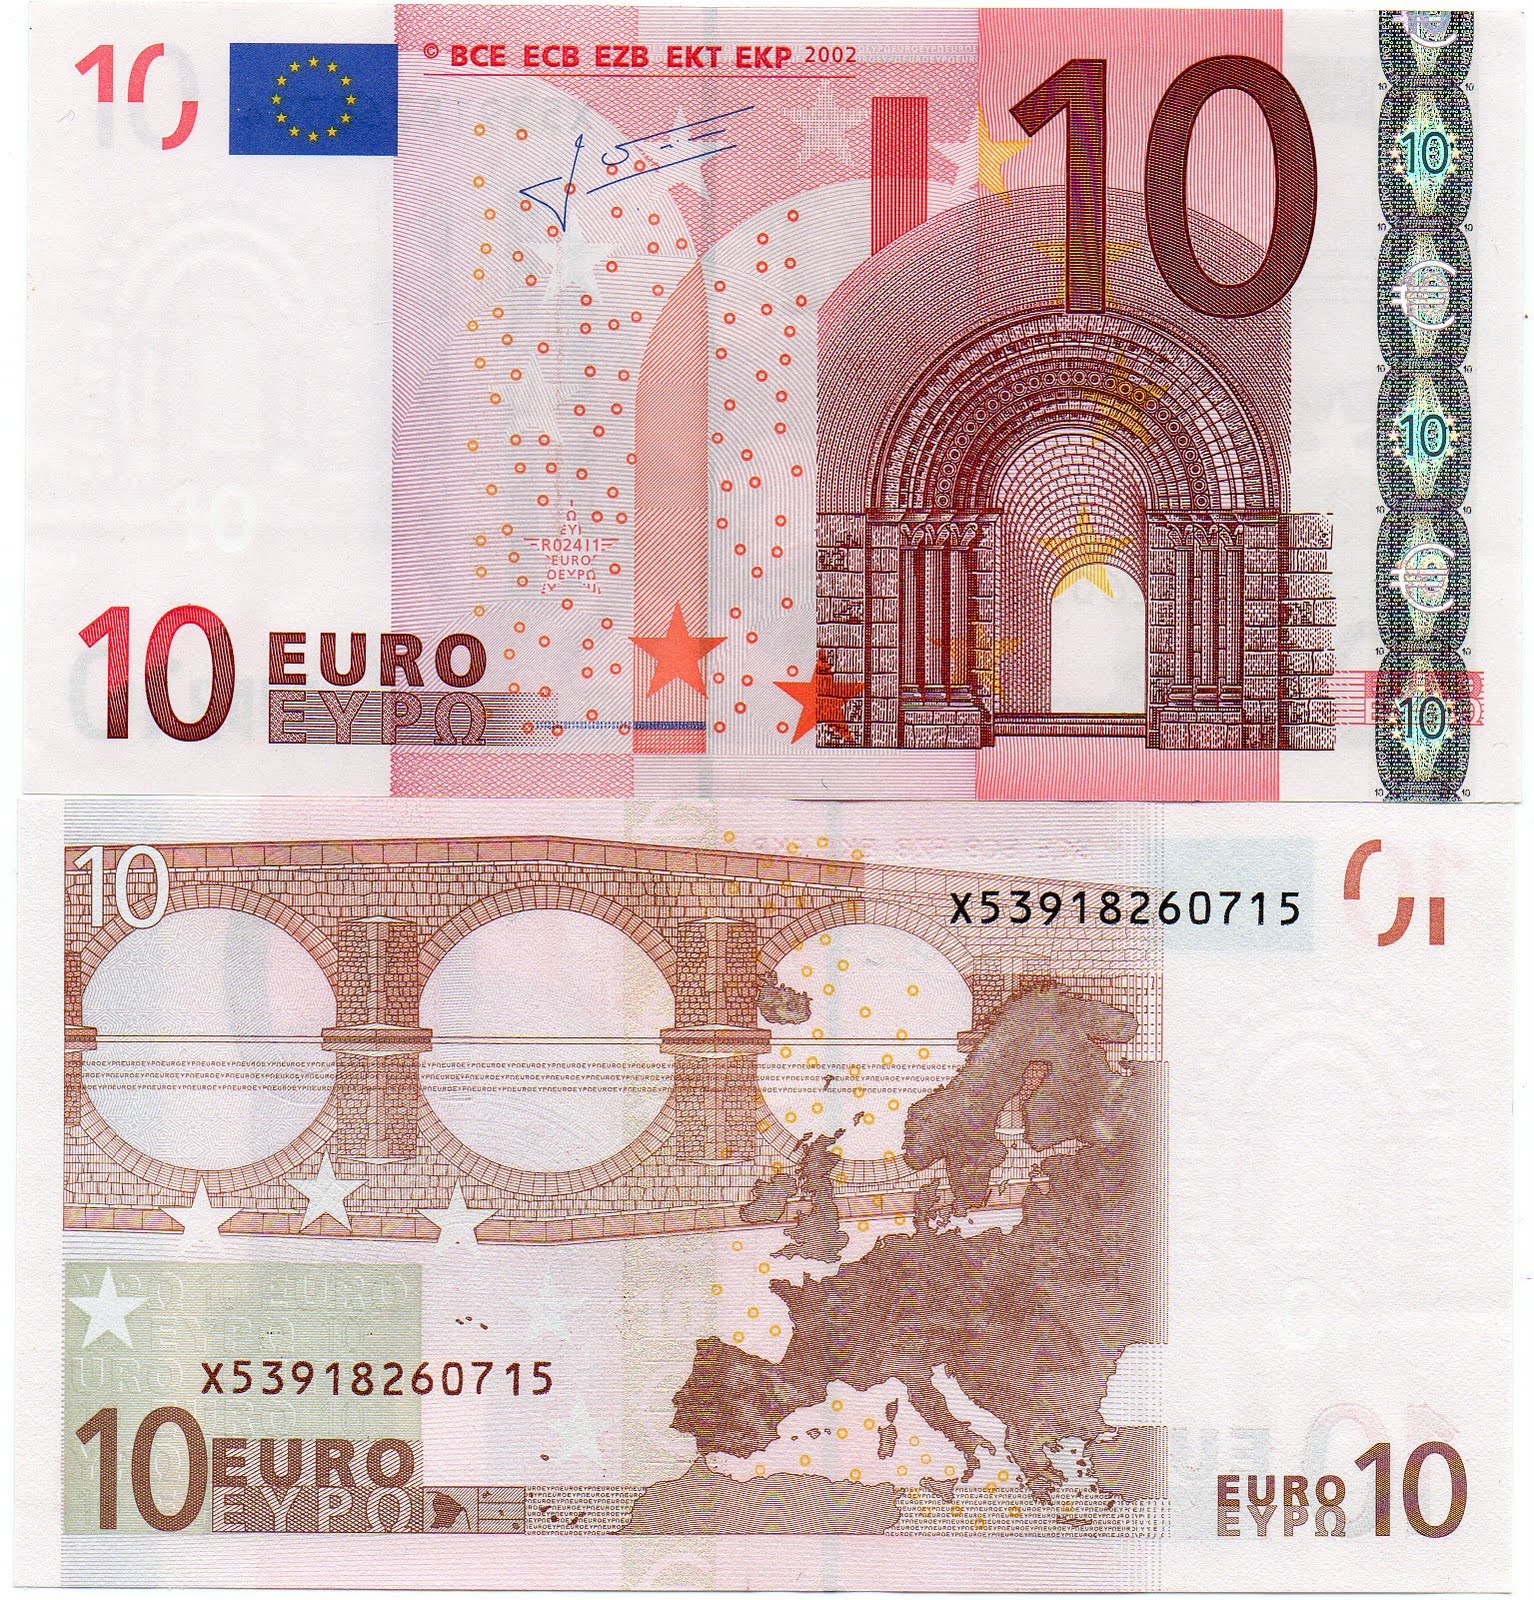 Creeis que un billete de 5 euros VIEJO valdrá mucho en un futuro? -  Forocoches